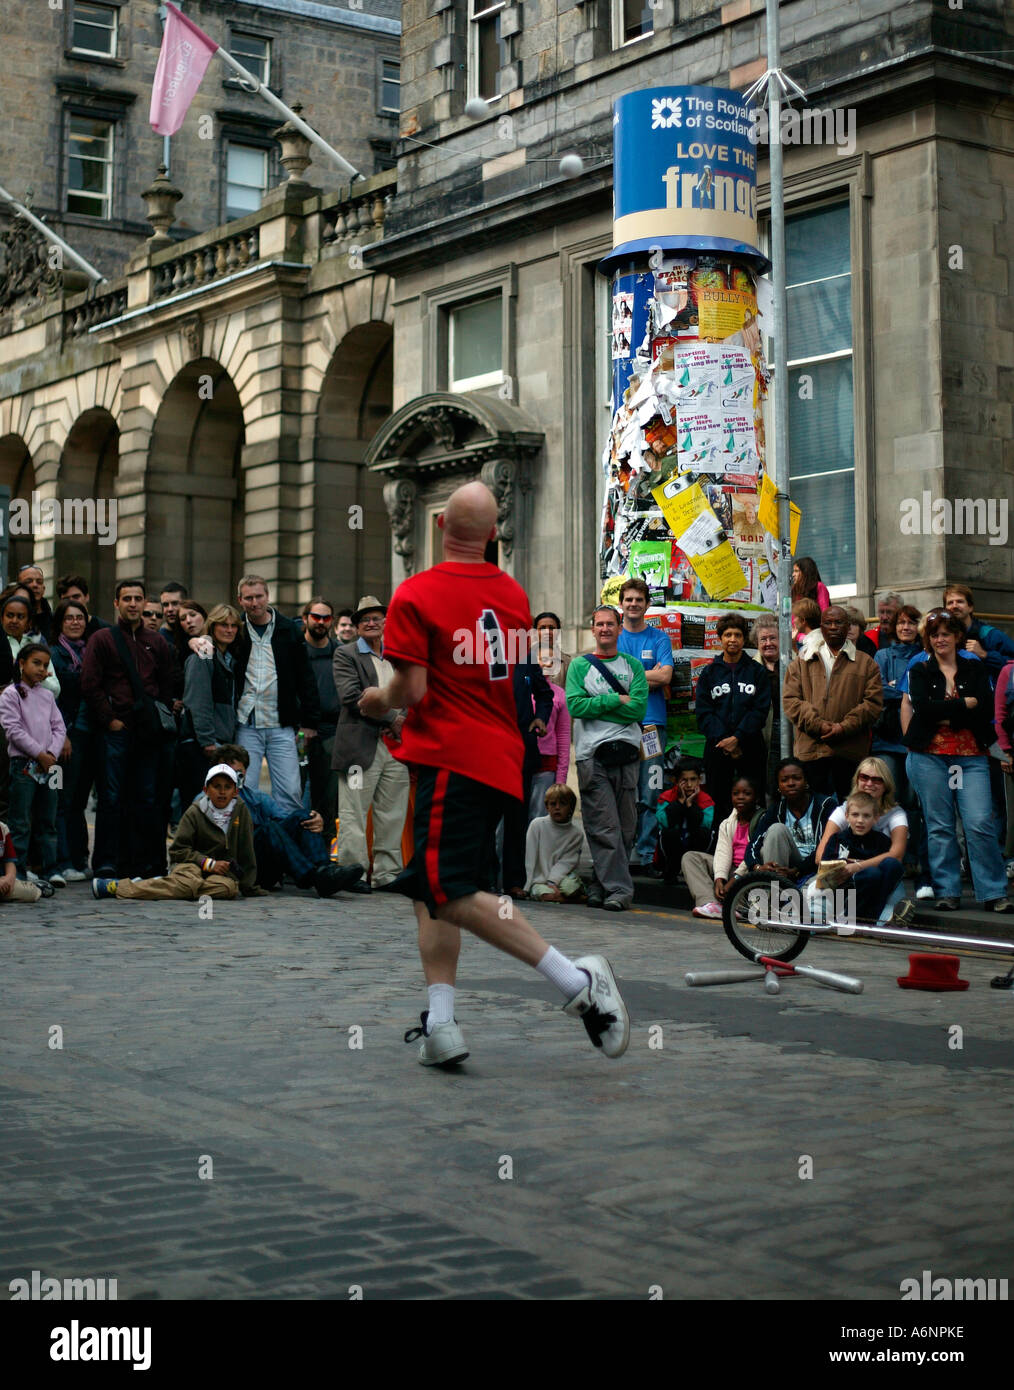 Mr Spin, Street Performer at Edinburgh Fringe Festival, Scotland UK Europe Stock Photo